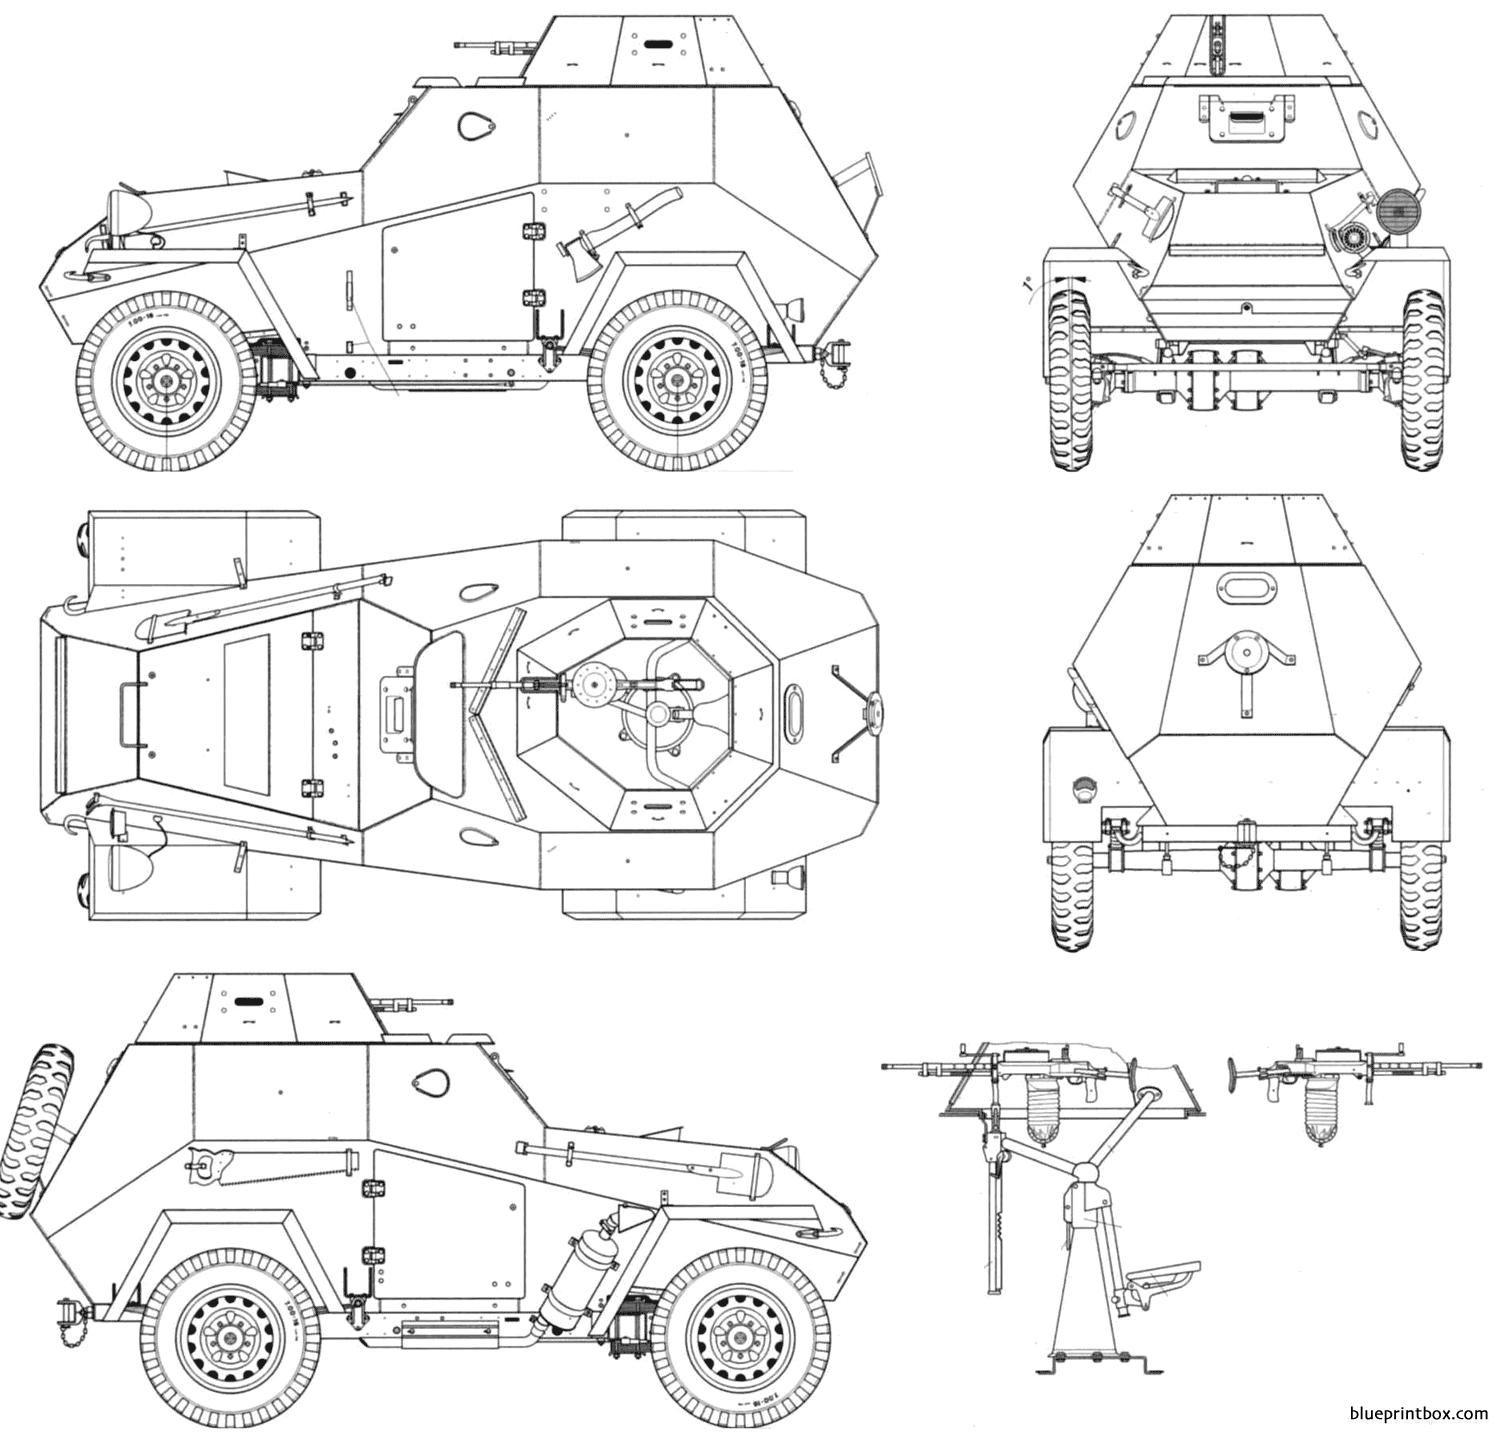 ba 64b 1942 armored car - BlueprintBox.com - Free Plans and Blueprints ...